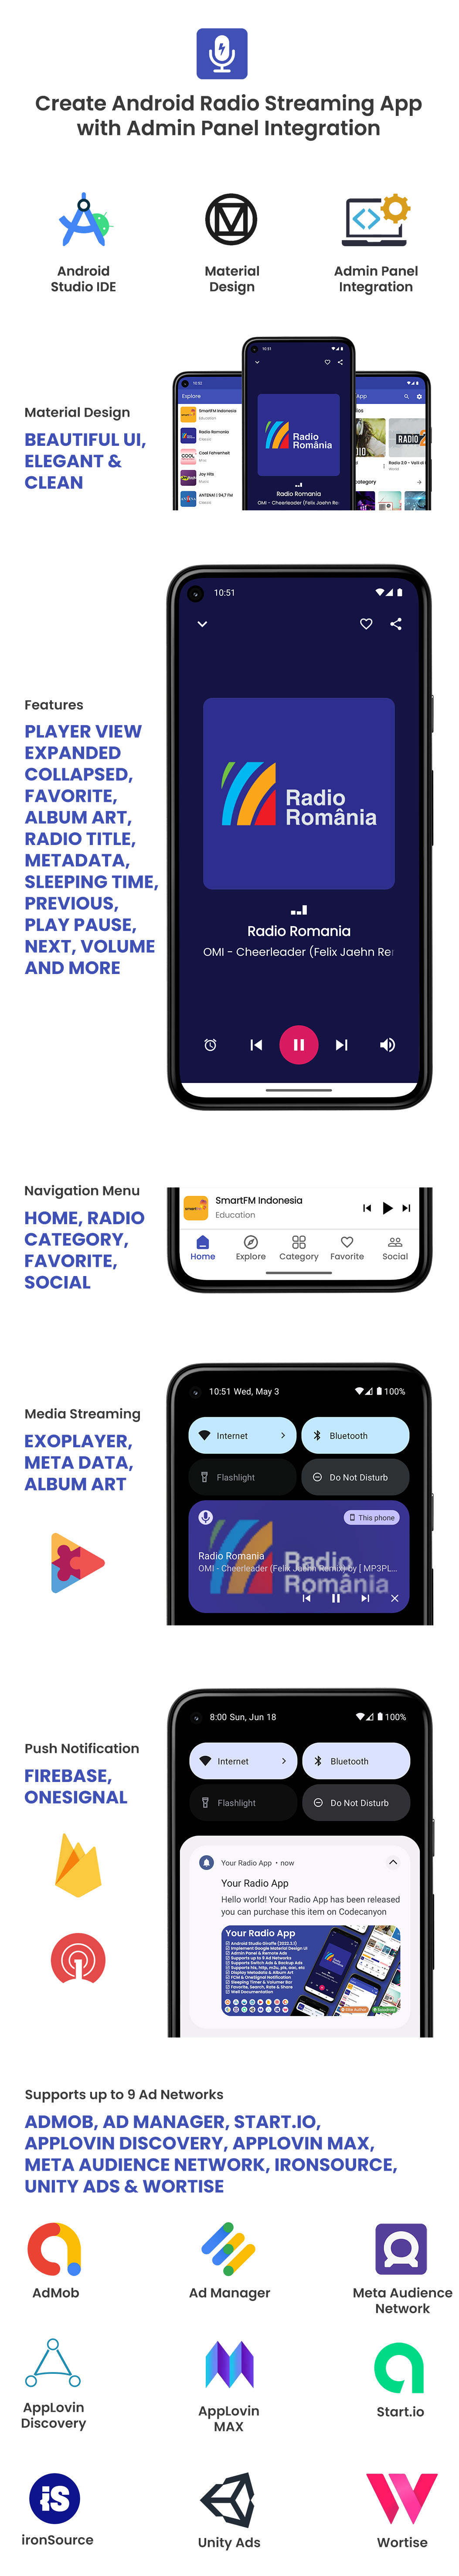 Your Radio App - 3